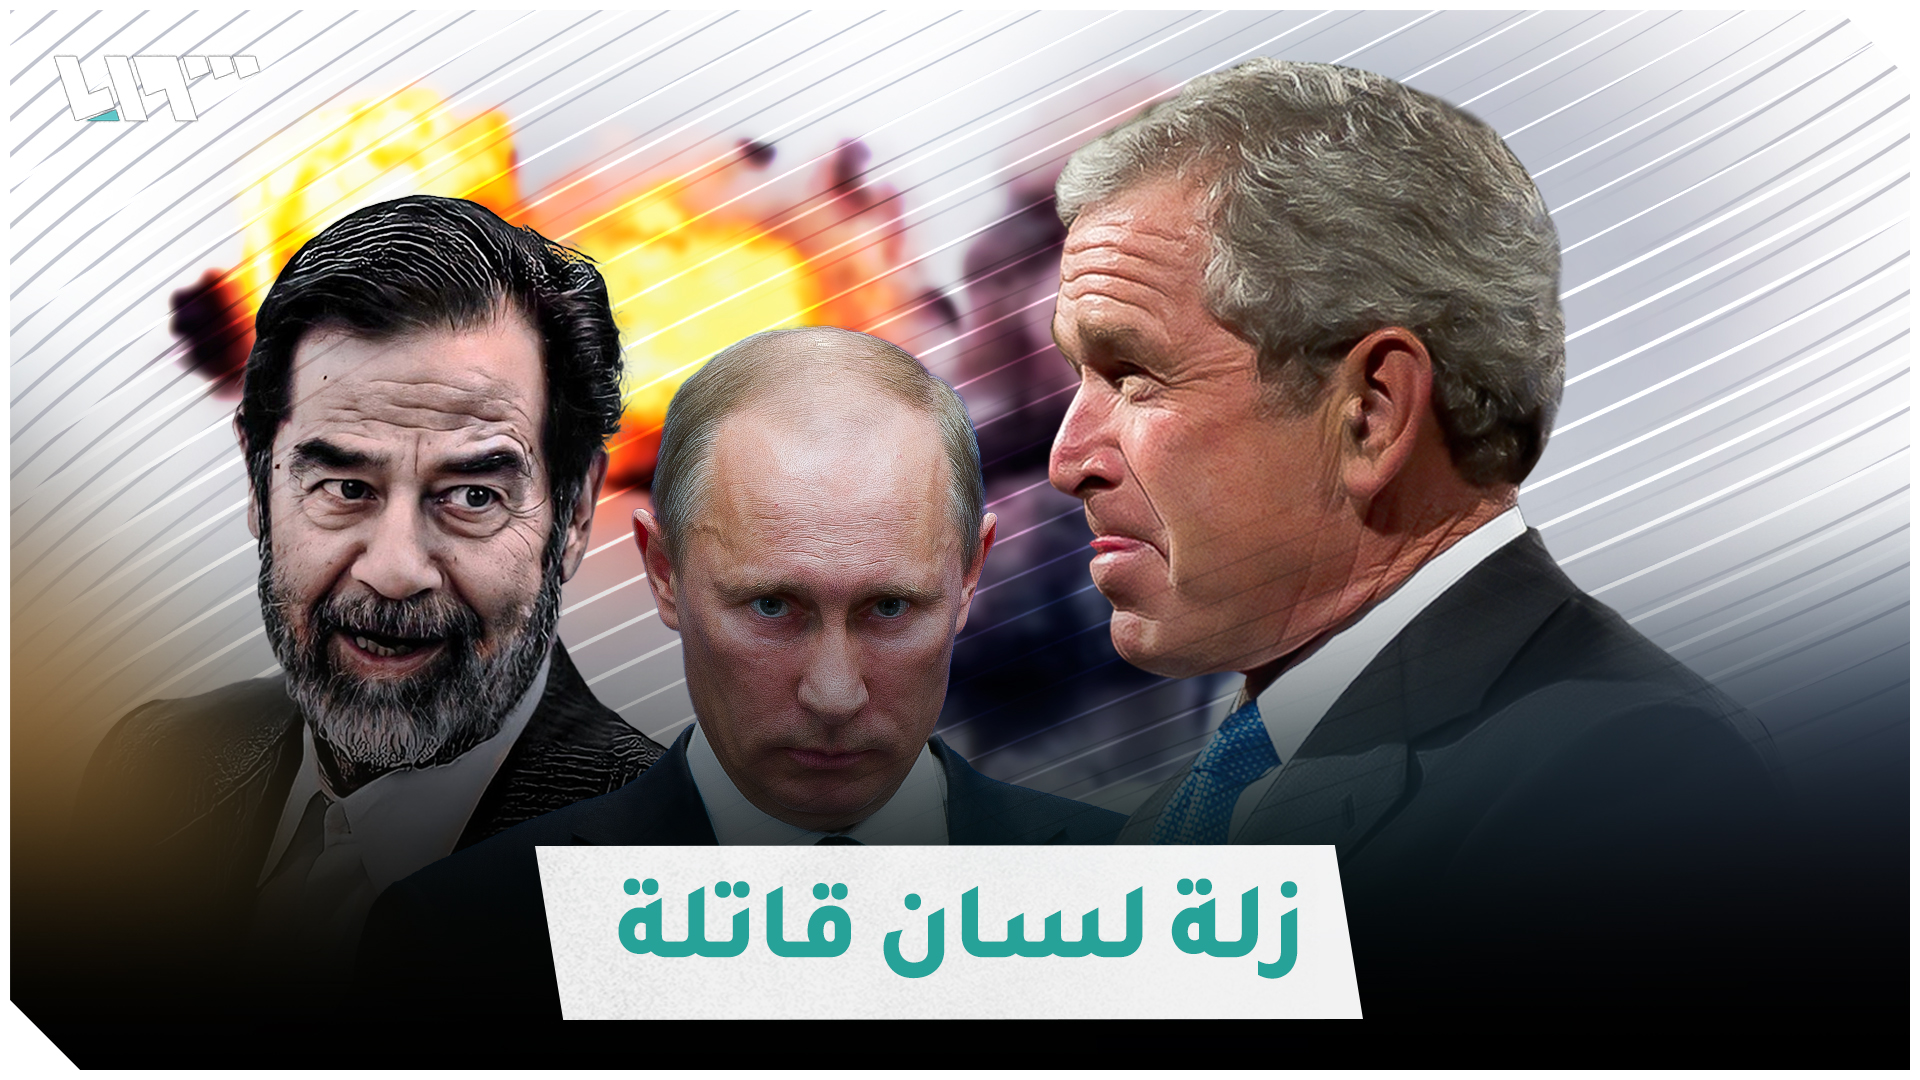 فضيحة لجورج بوش تكشف حقيقة ما جرى في العراق